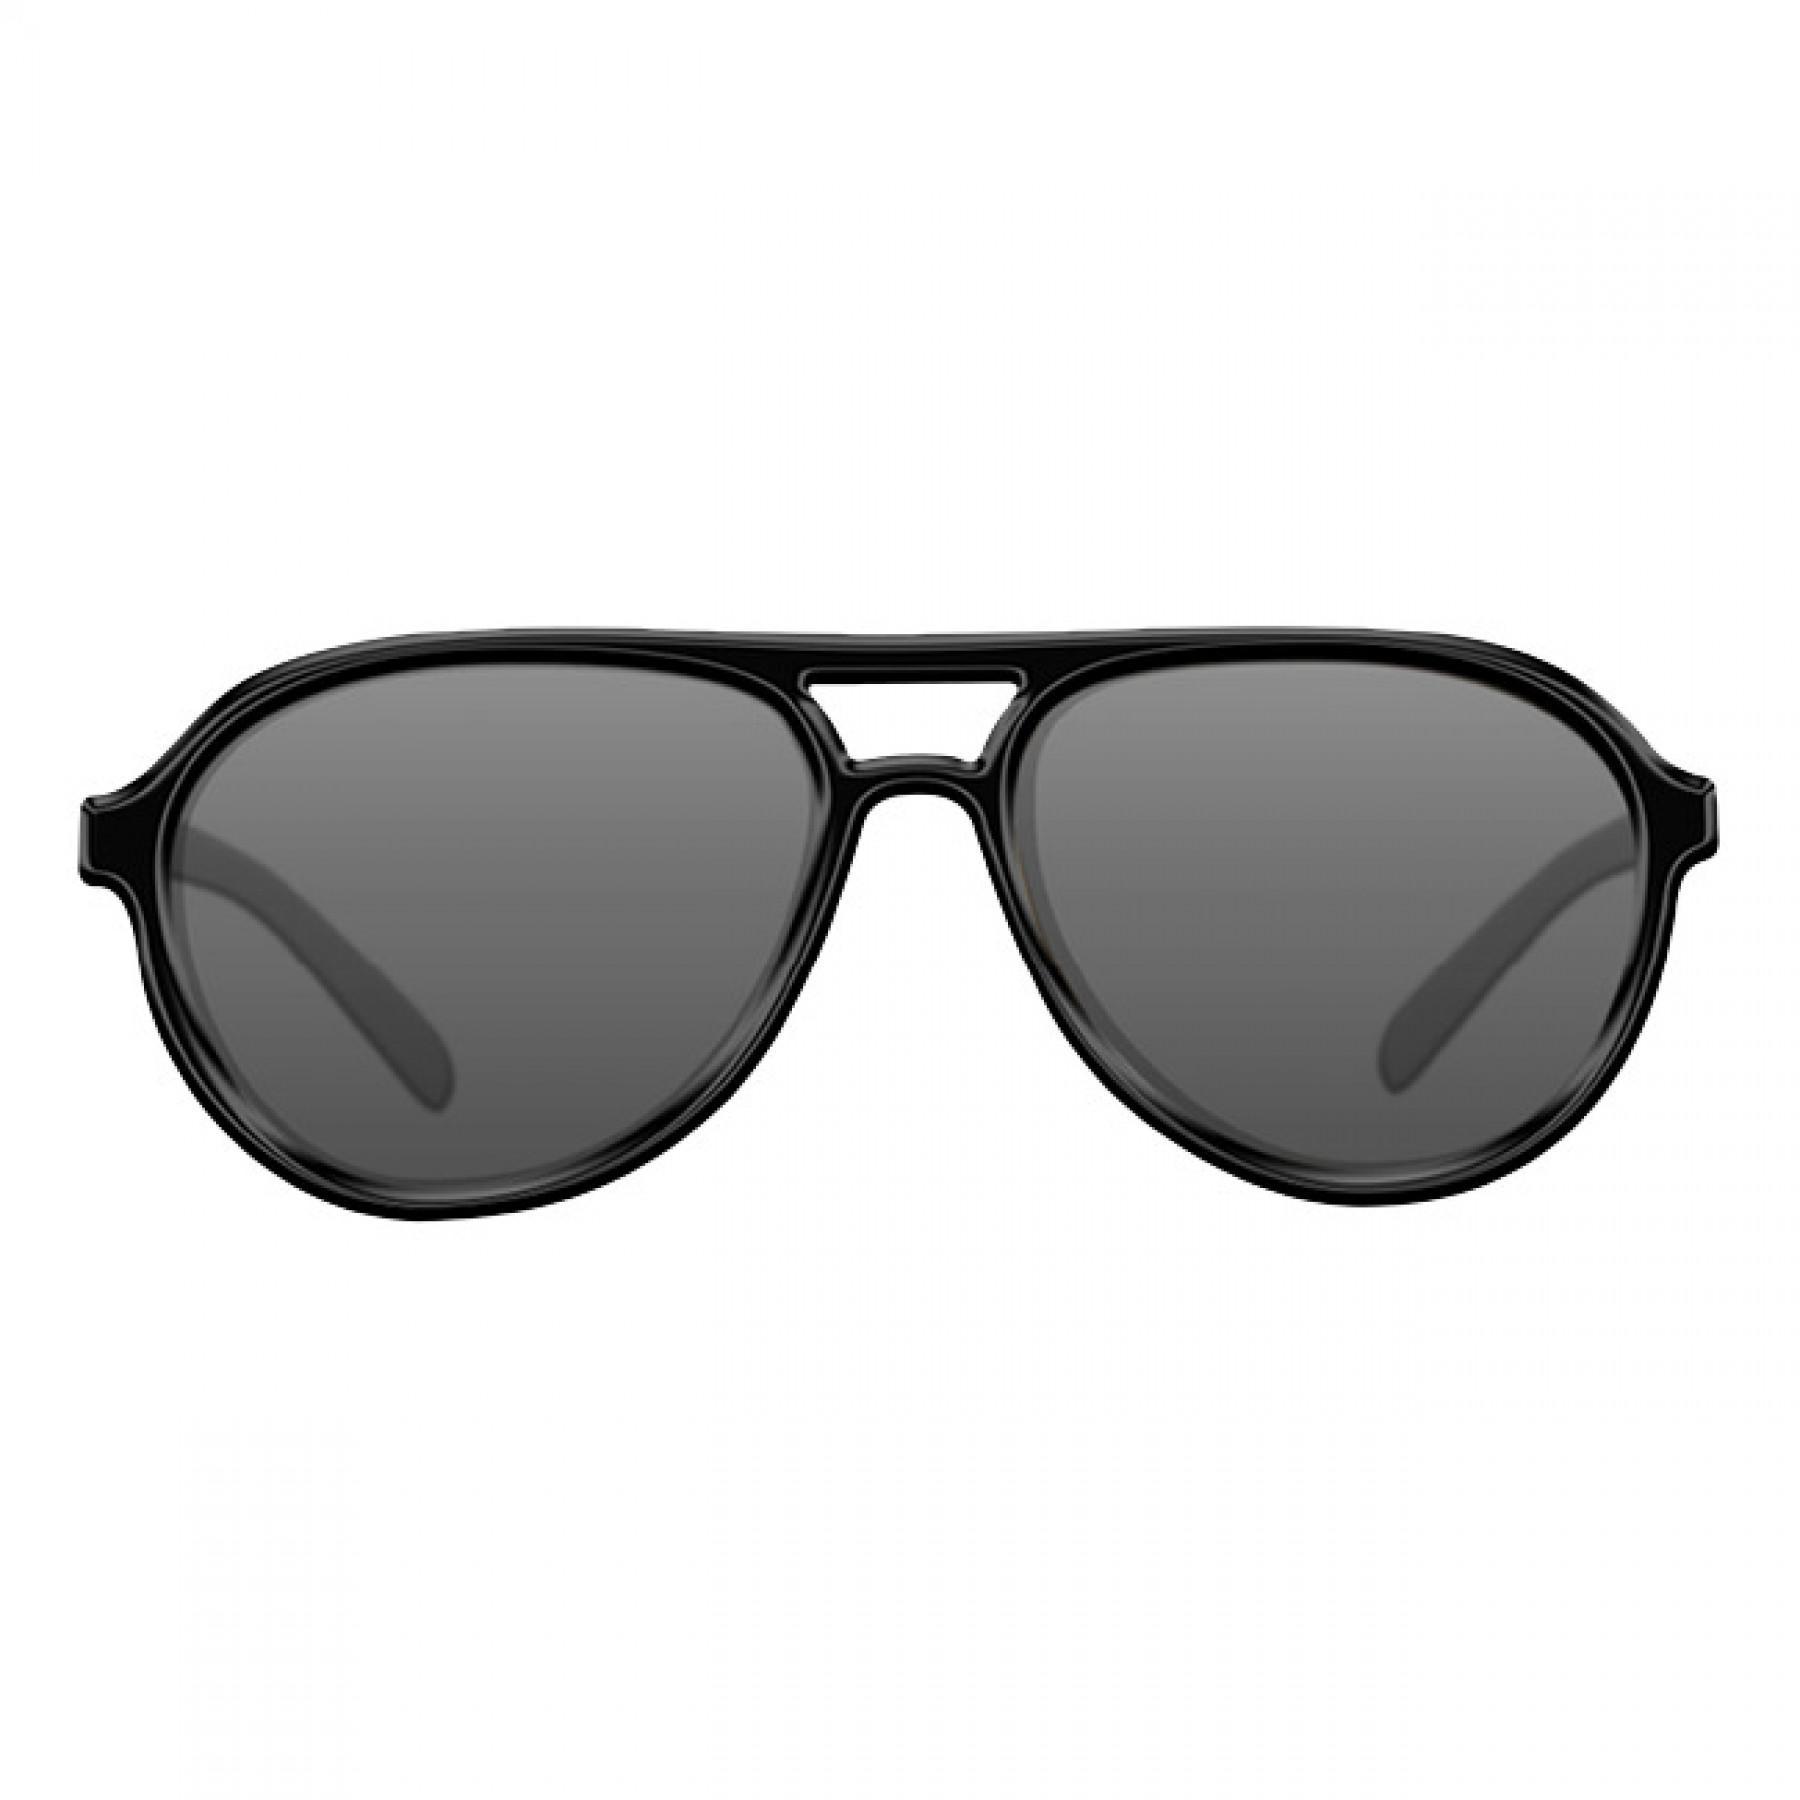 Okulary przeciwsłoneczne Korda Sunglasses Aviator